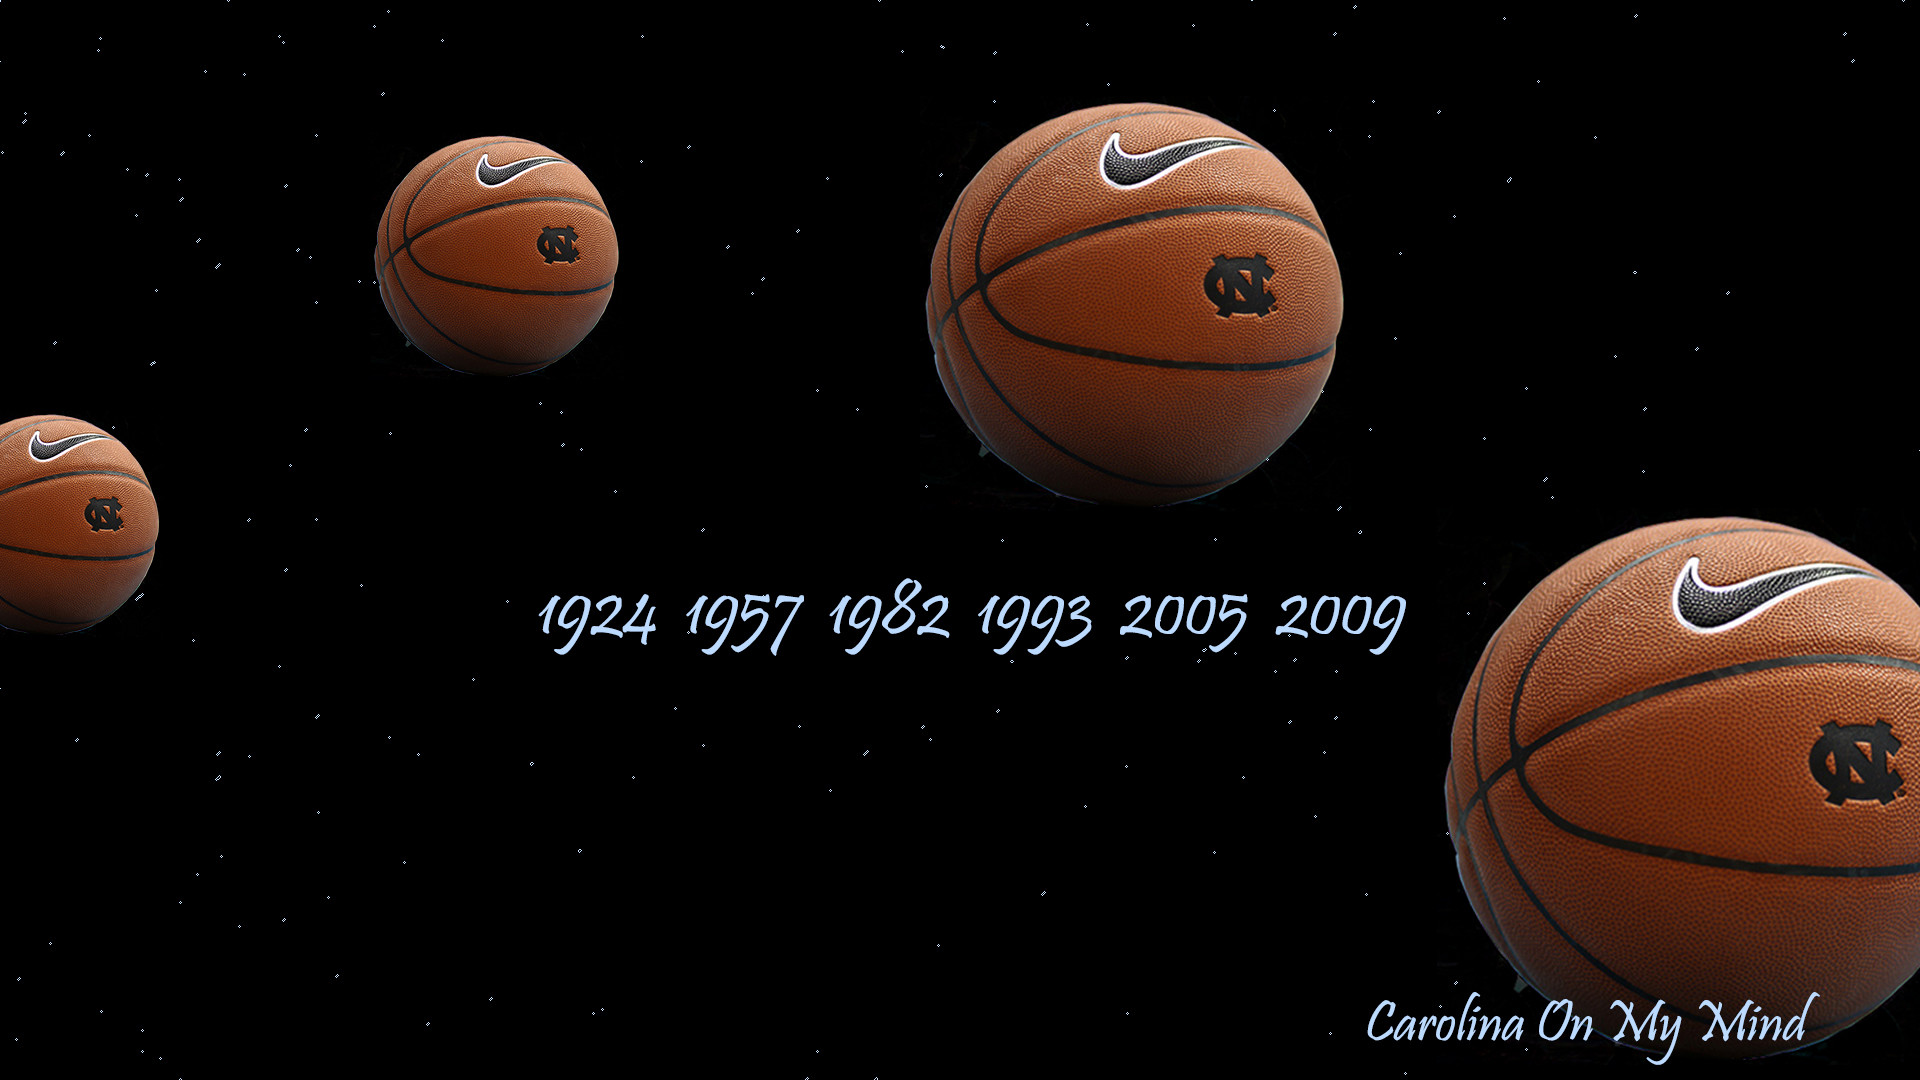 1920x1080 UNC Desktop Wallpaper - Basketballs in Dark Sky